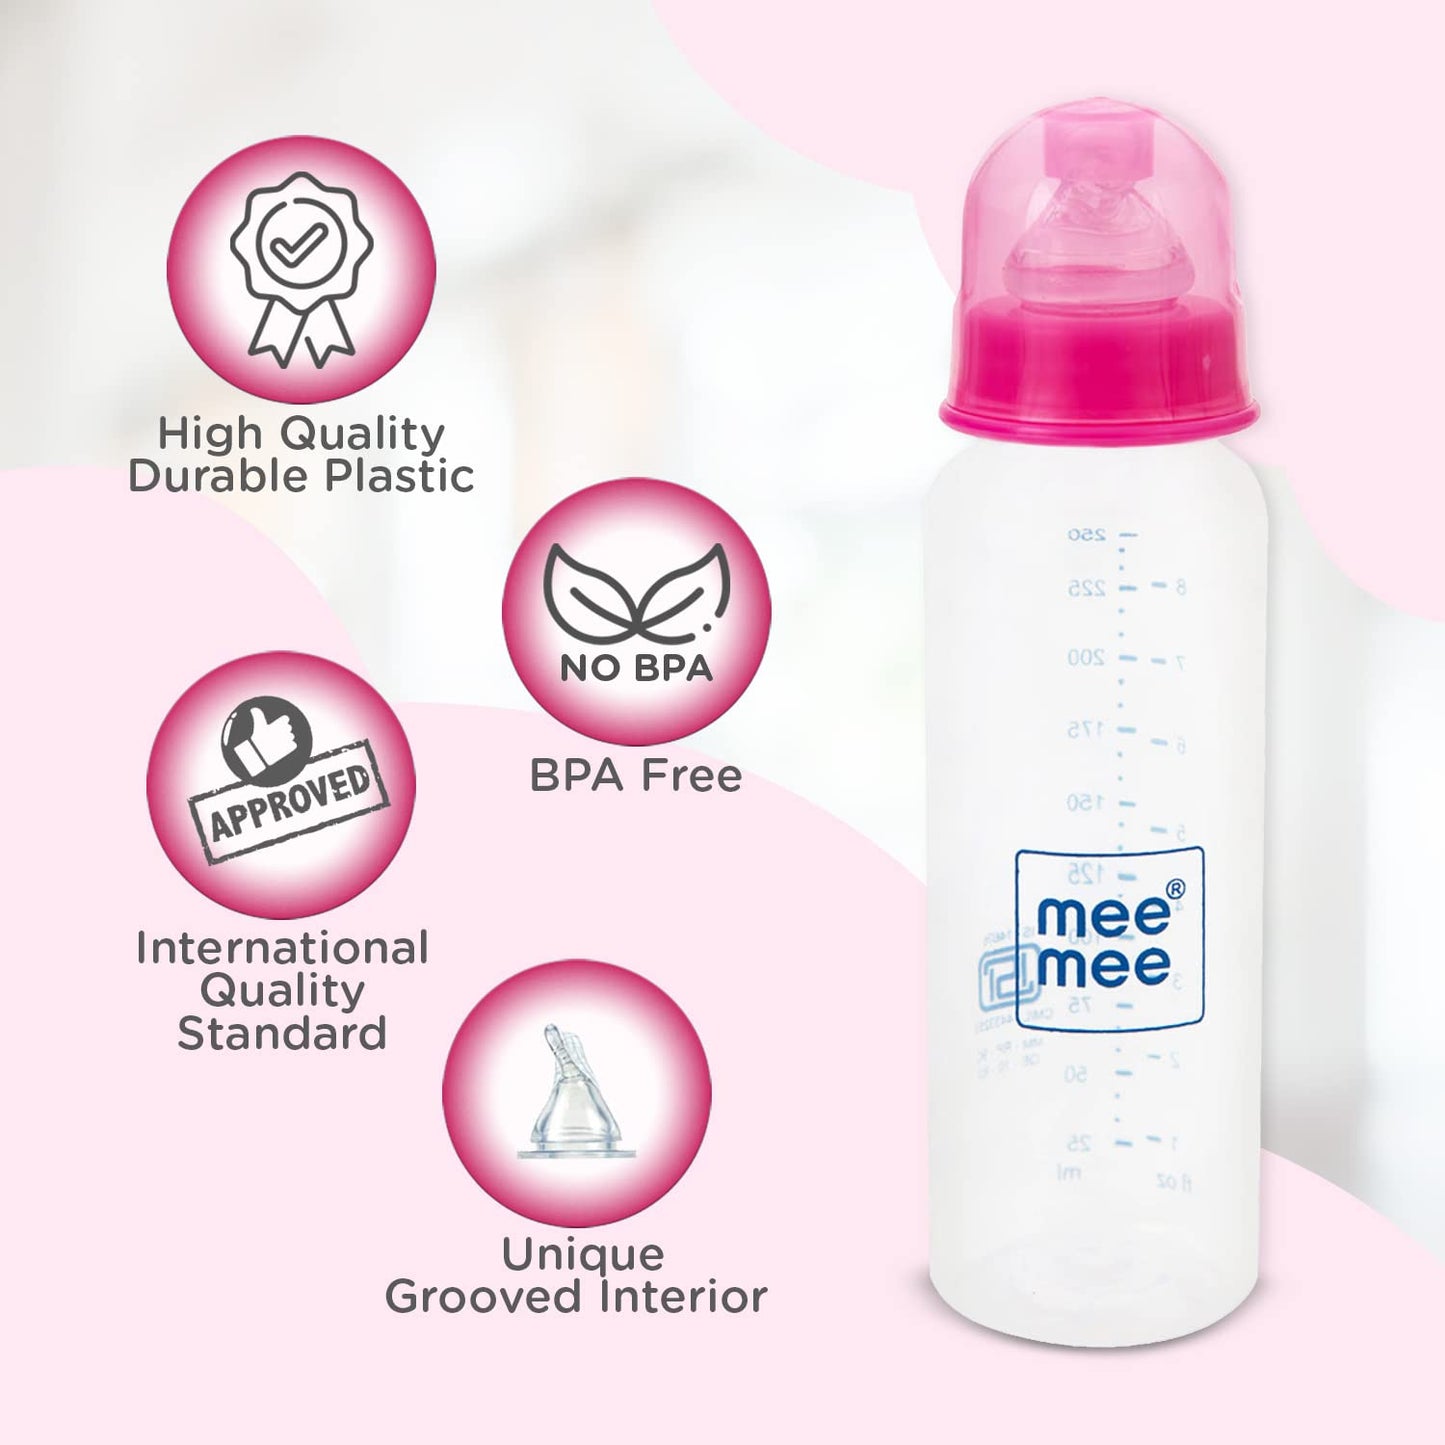 Mee Mee Eazy Flo Premium Baby Feeding Bottle (Pink, Green 250 ml- Dual Pack)